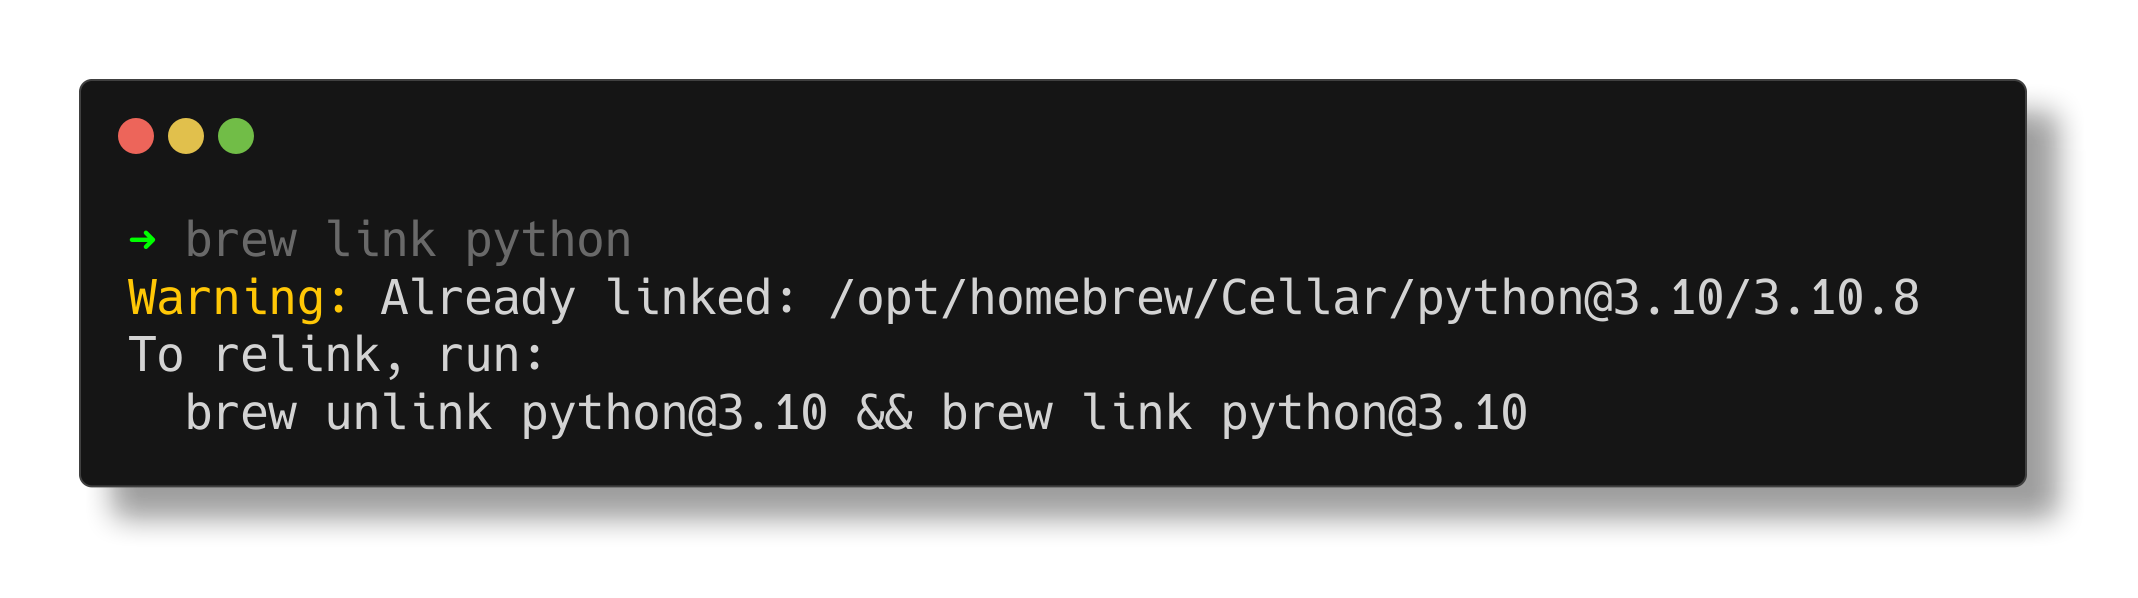 Homebrew - Brew Link Python path (homebrew python not found)